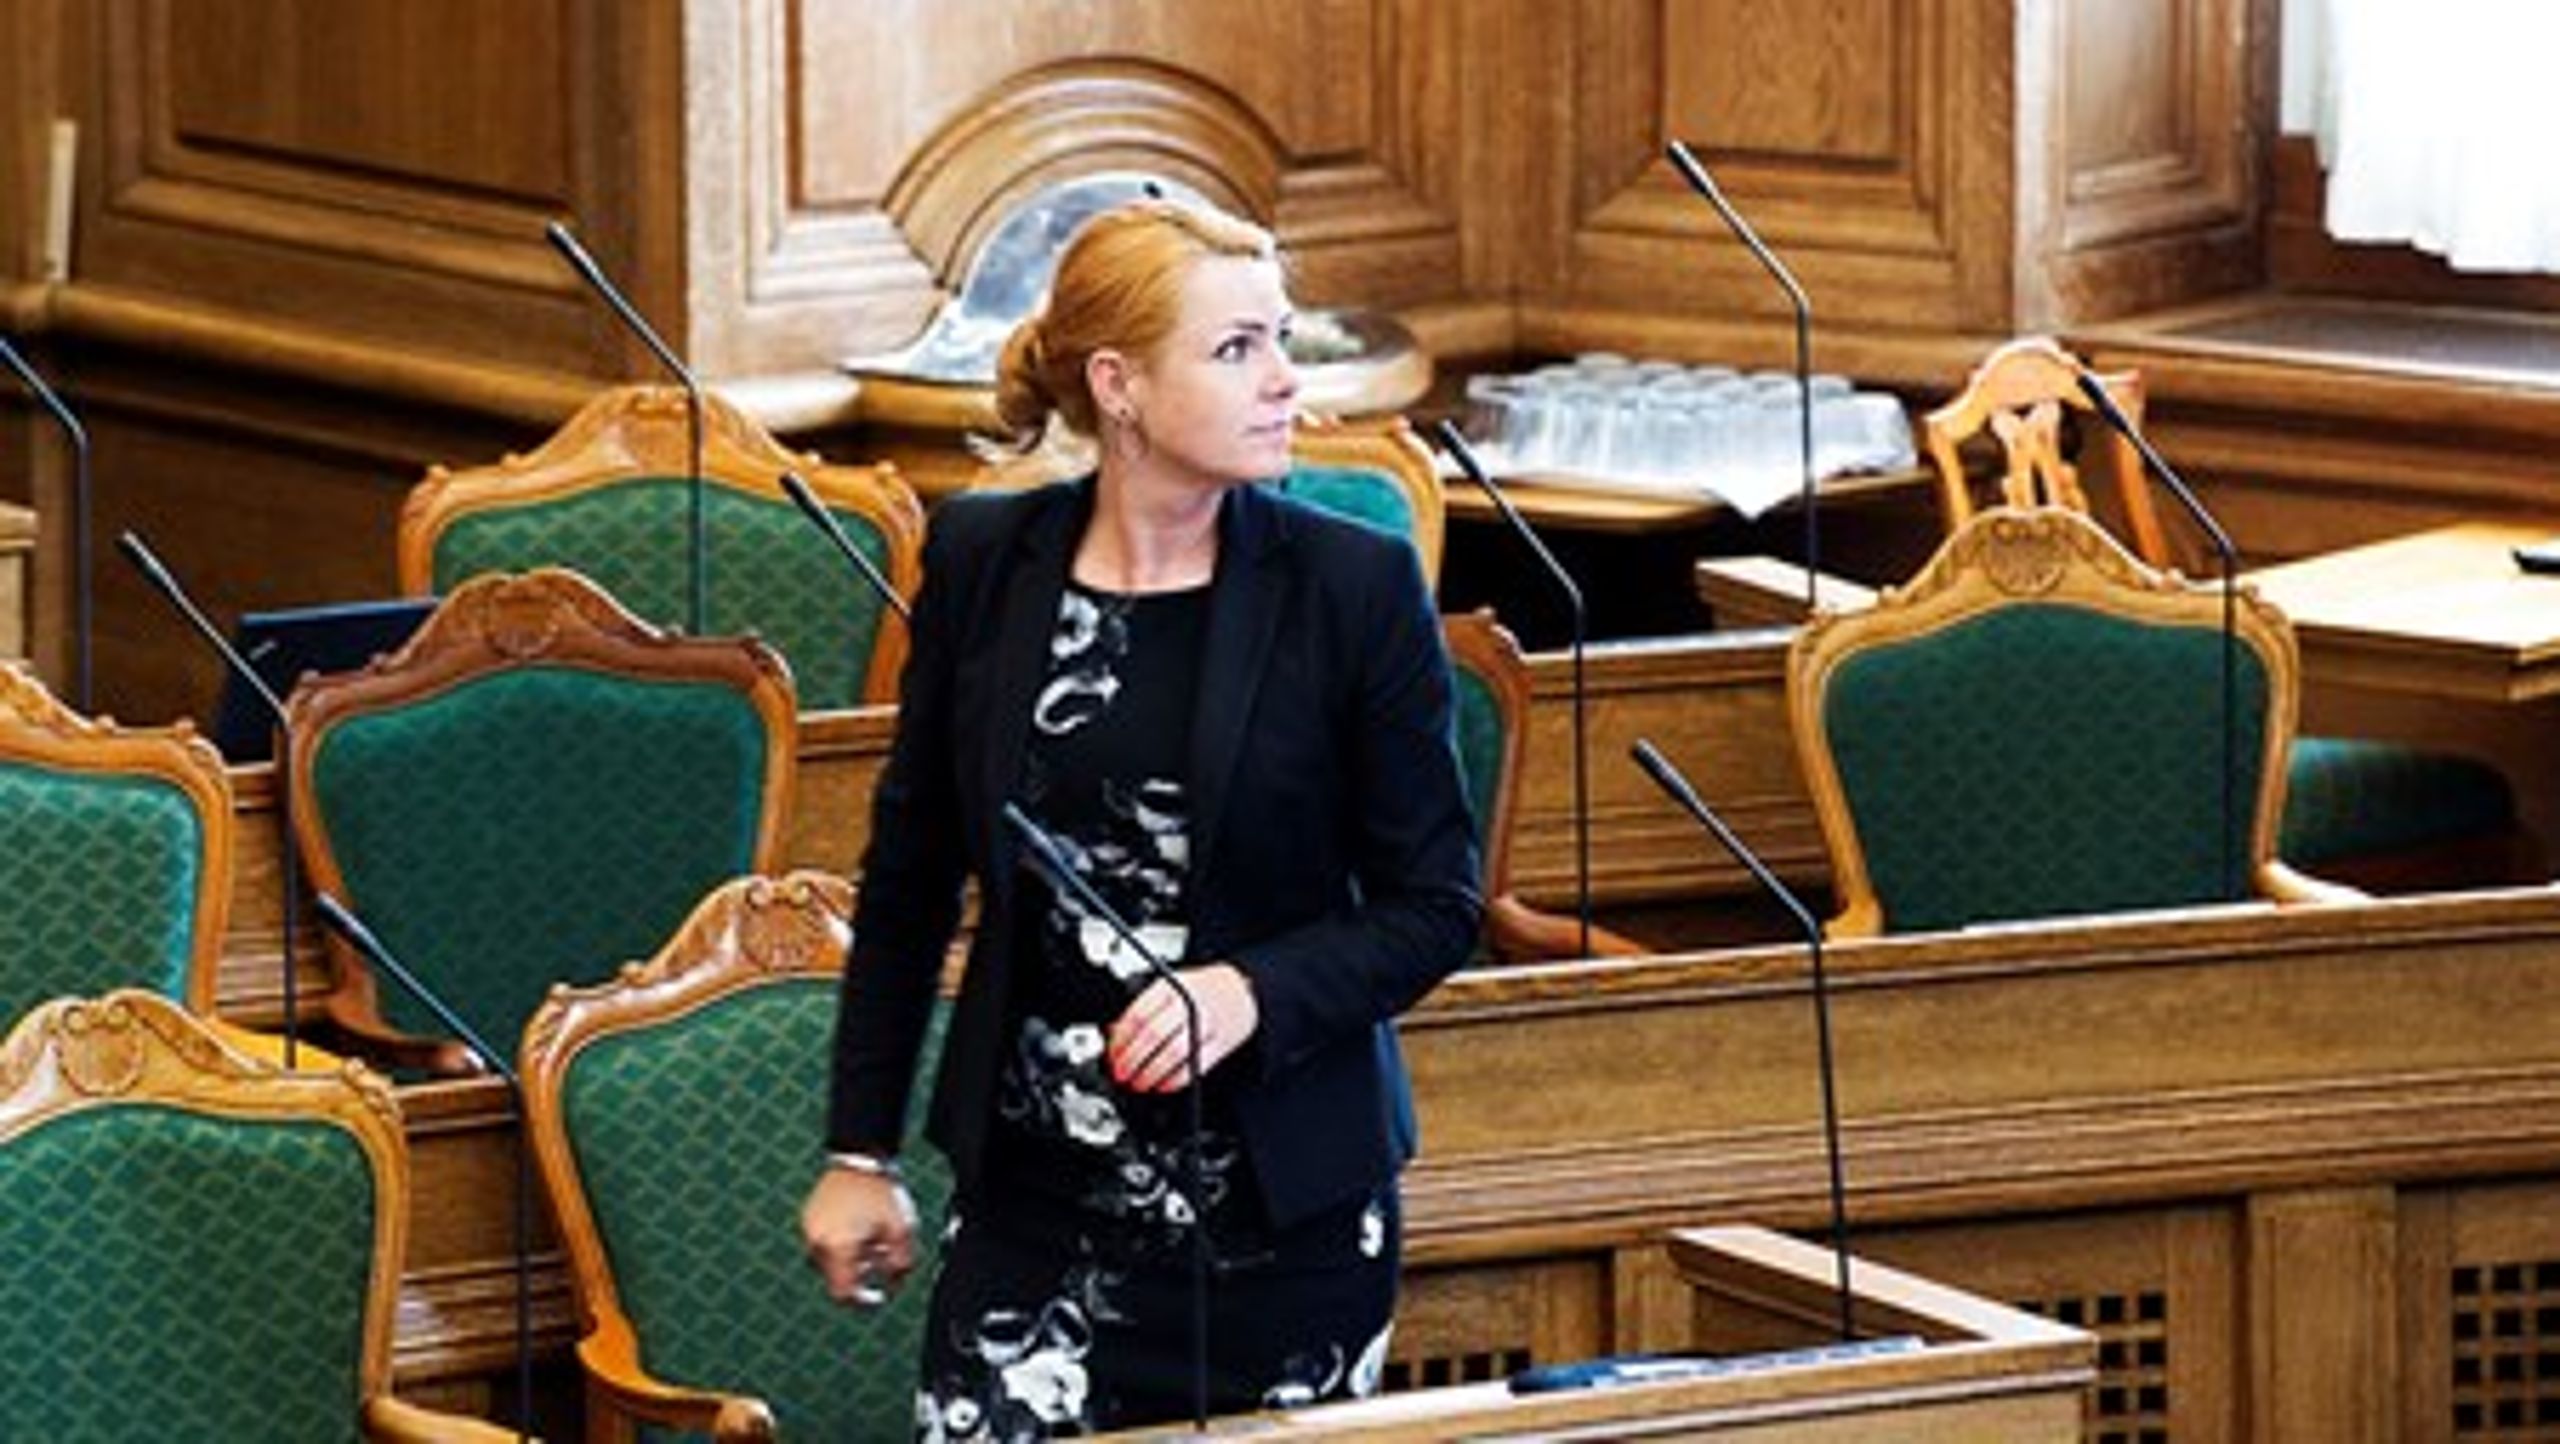 Onsdag bad integrationsminister Inger Støjberg (V) Indfødsretsudvalget om at genbehandle 2.500 dispensationssager om&nbsp;statsborgerskab. Torsdag har udvalget så igen givet dispensation i alle&nbsp;sager.&nbsp;